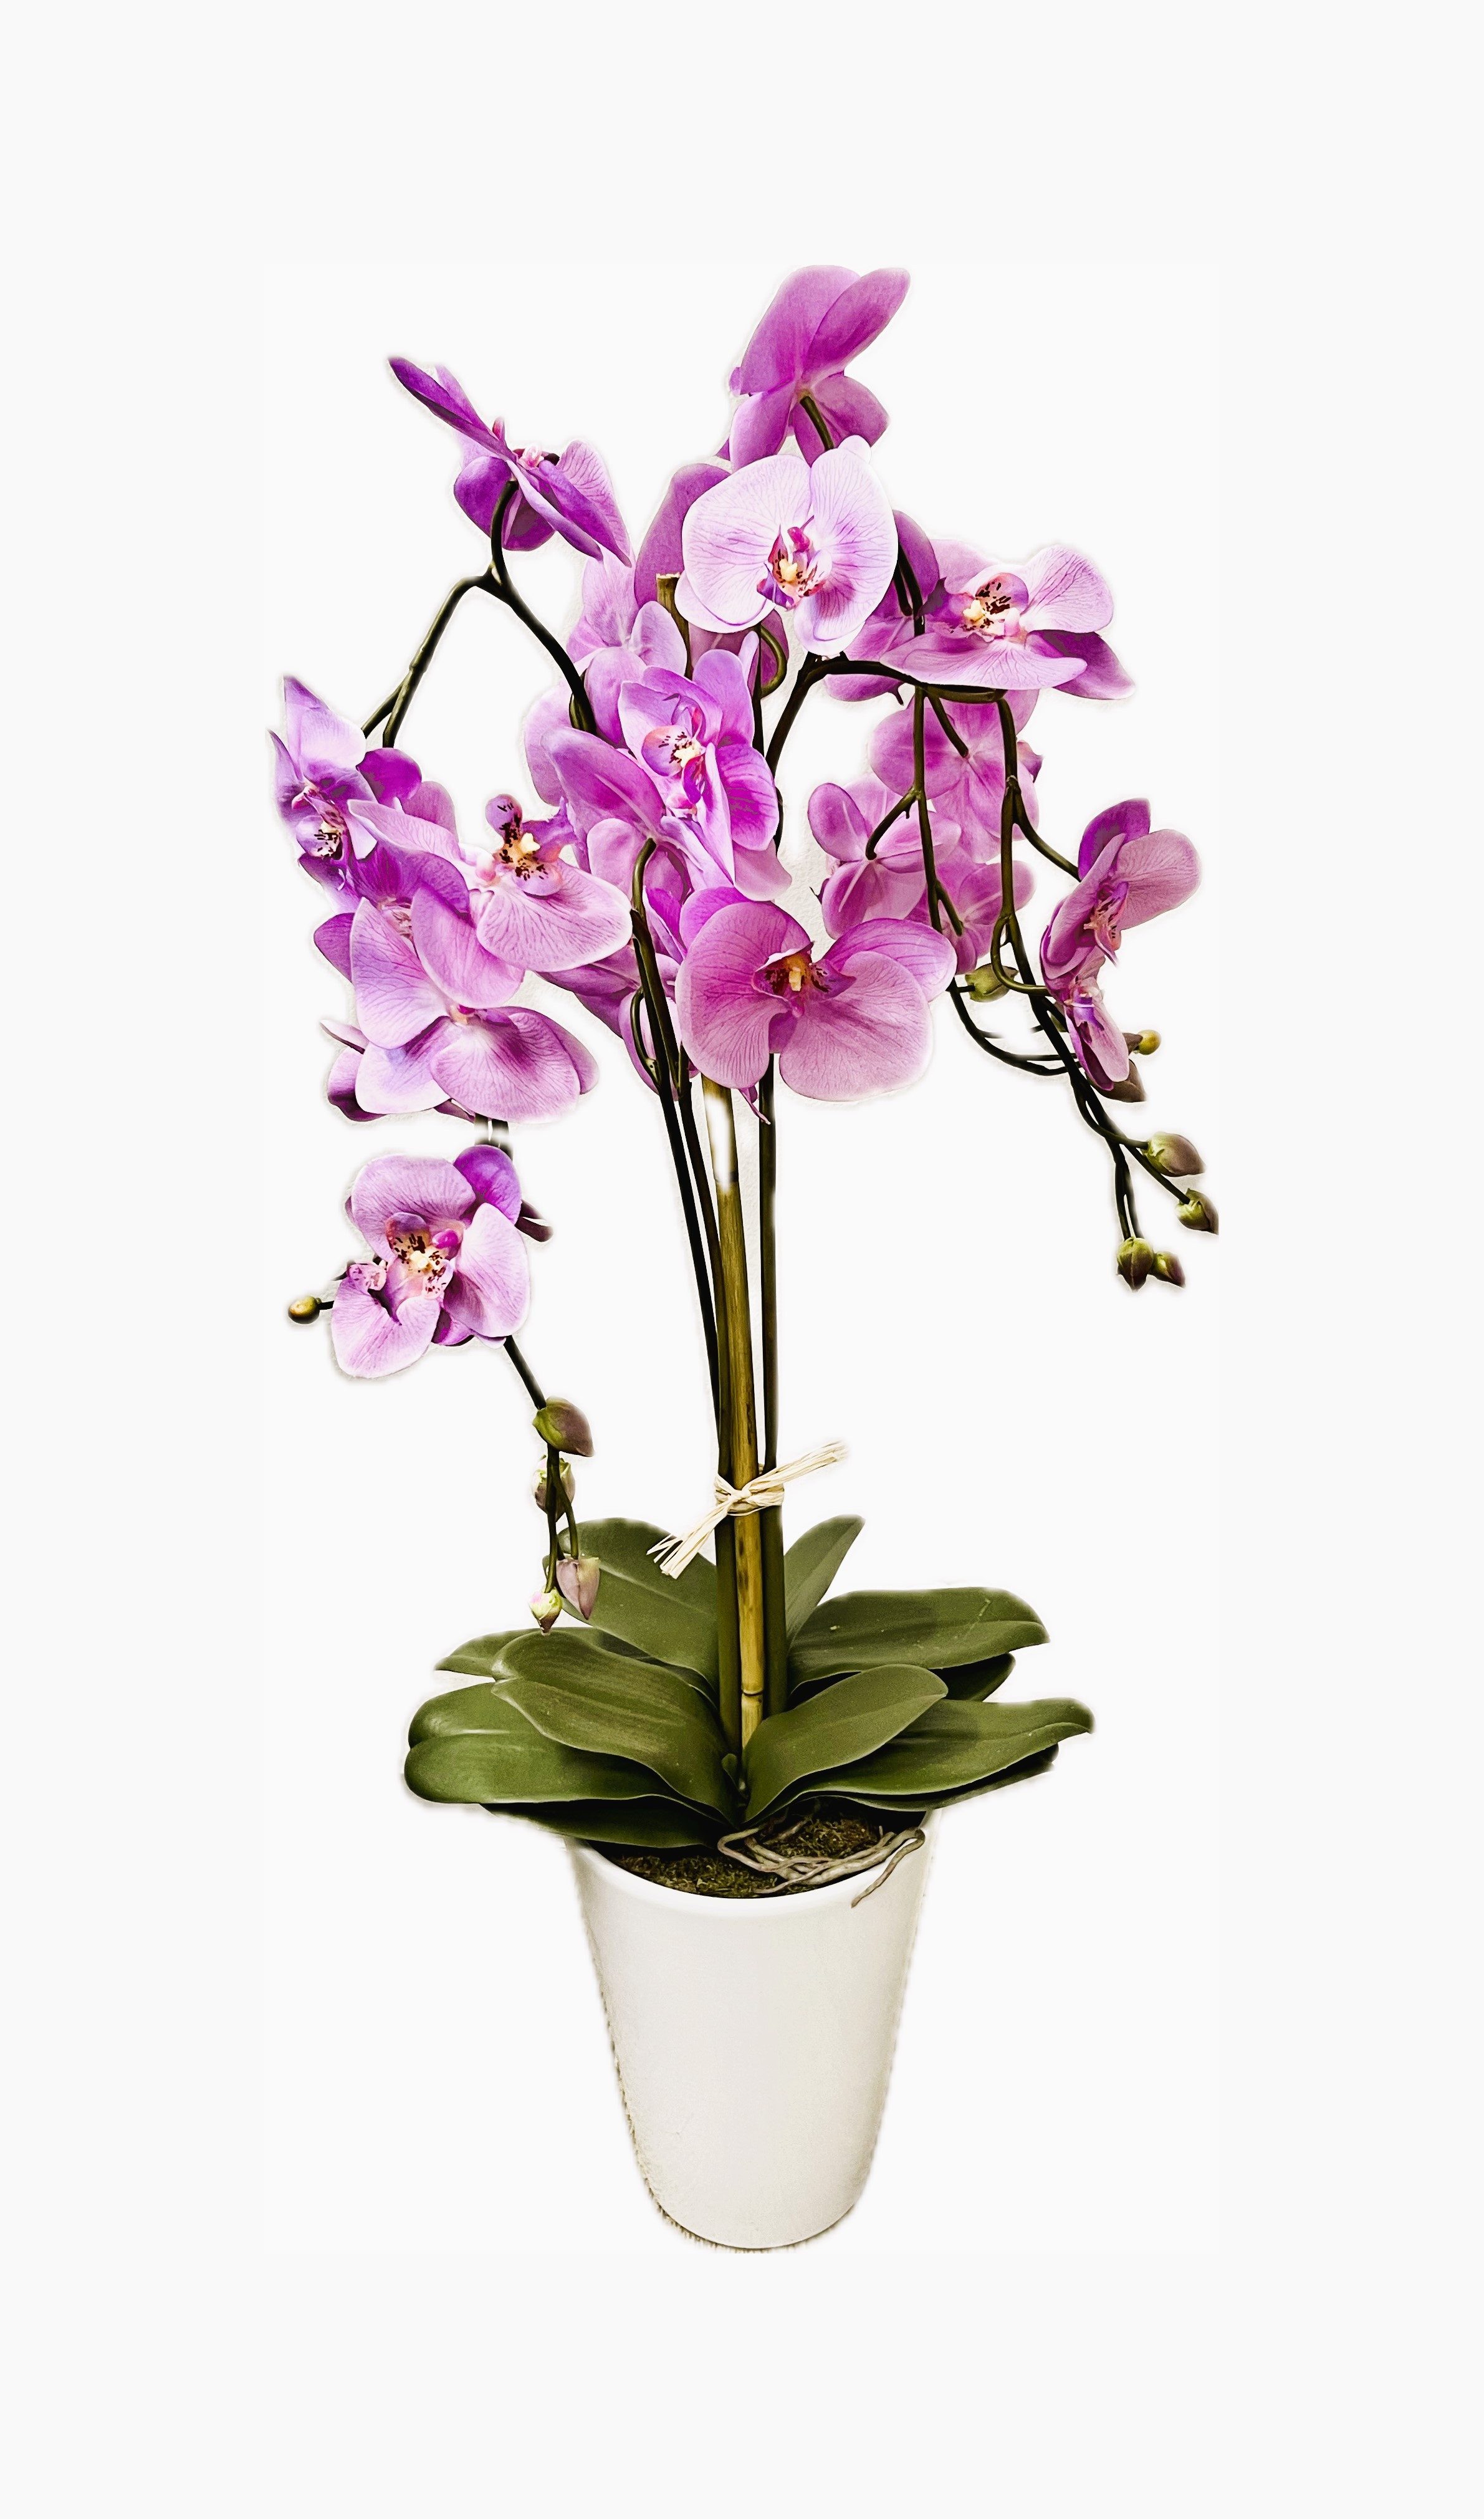 Kunstorchidee Orchidee Kunstblume künstliche Pflanzen orchideen Kunstpflanze 767 Orchideen Phalaeonopsis künstlich, PassionMade, Höhe 90 cm, Orchidee Künstlich im Topf wie echt